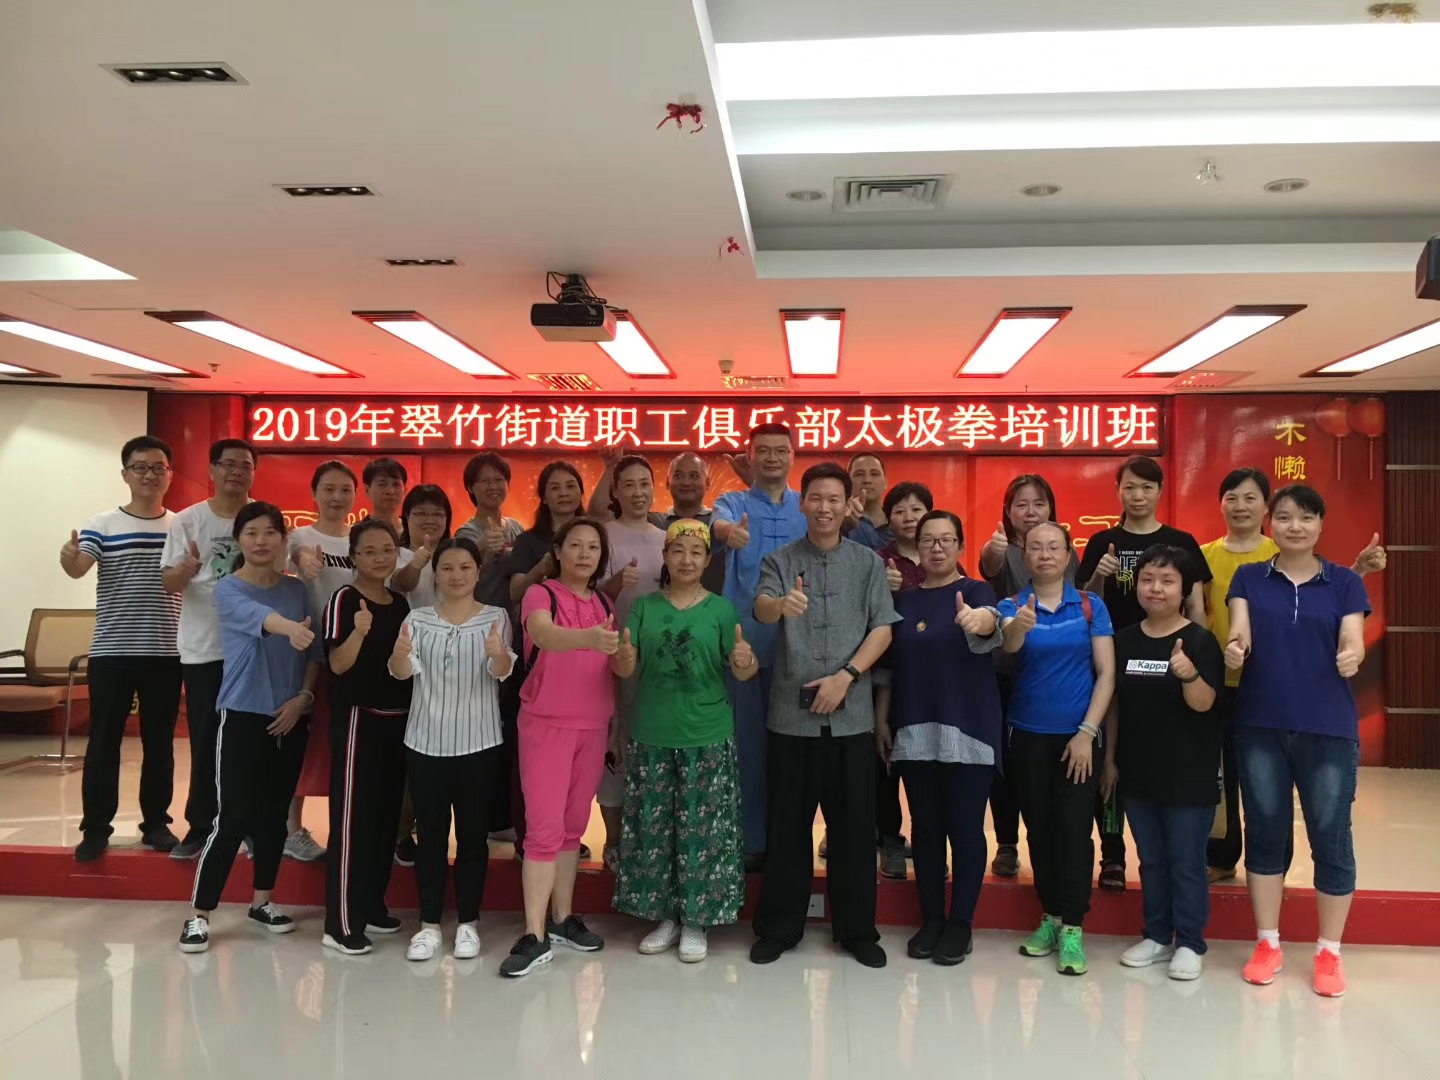 2019年翠竹街道总工会举办太极拳培训班